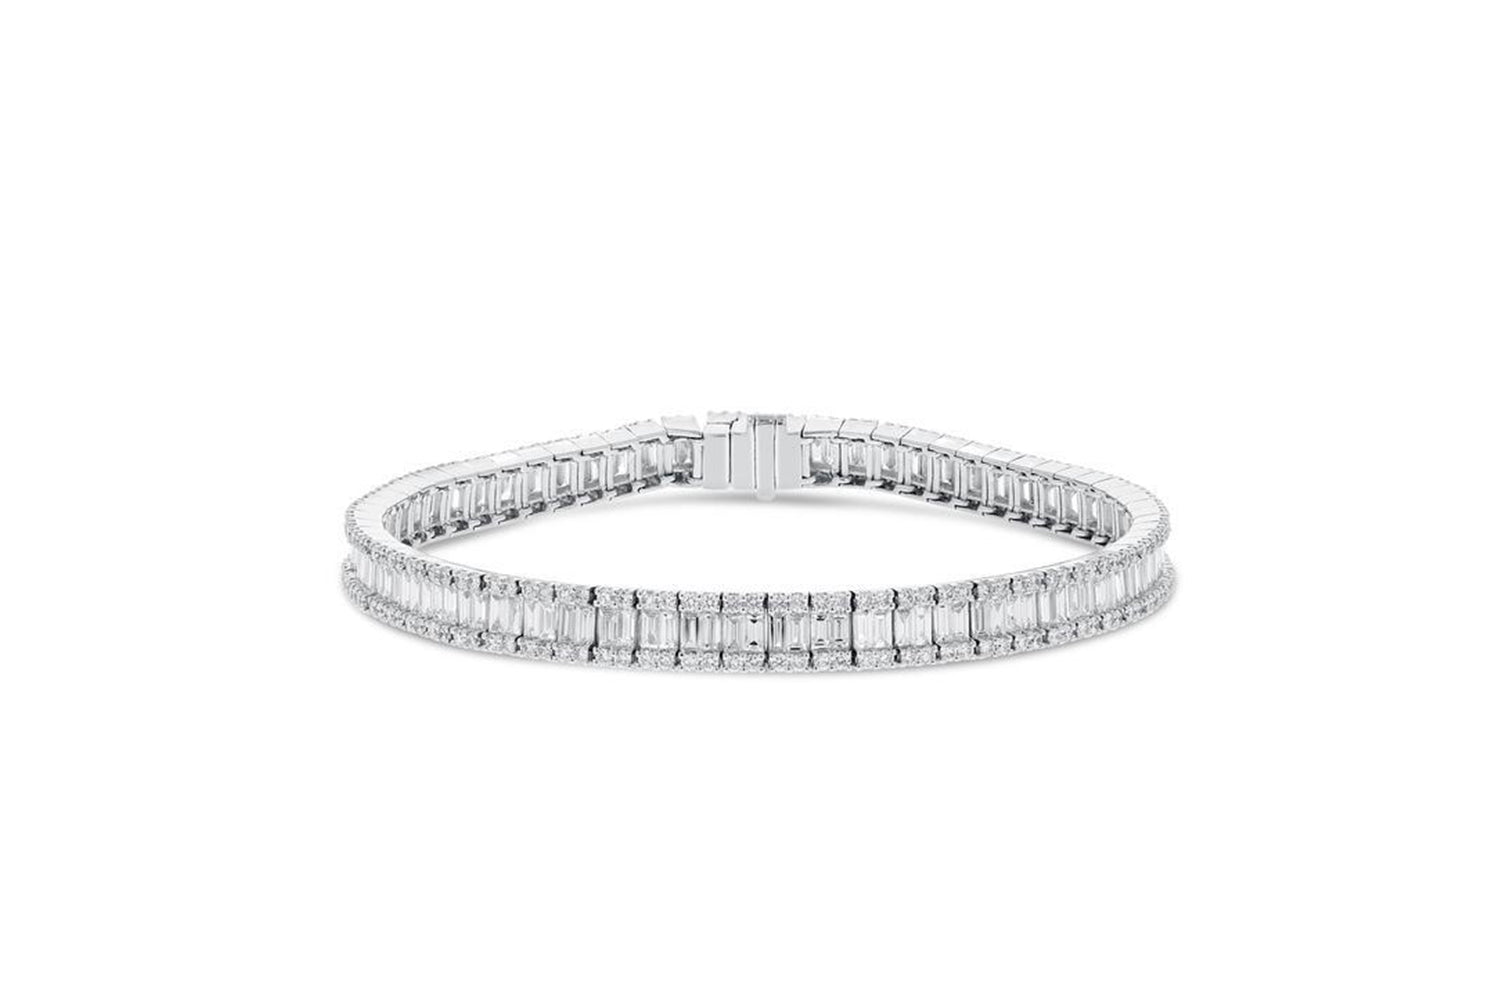 18K White Gold Diamond Bracelet, 6.65 Carats